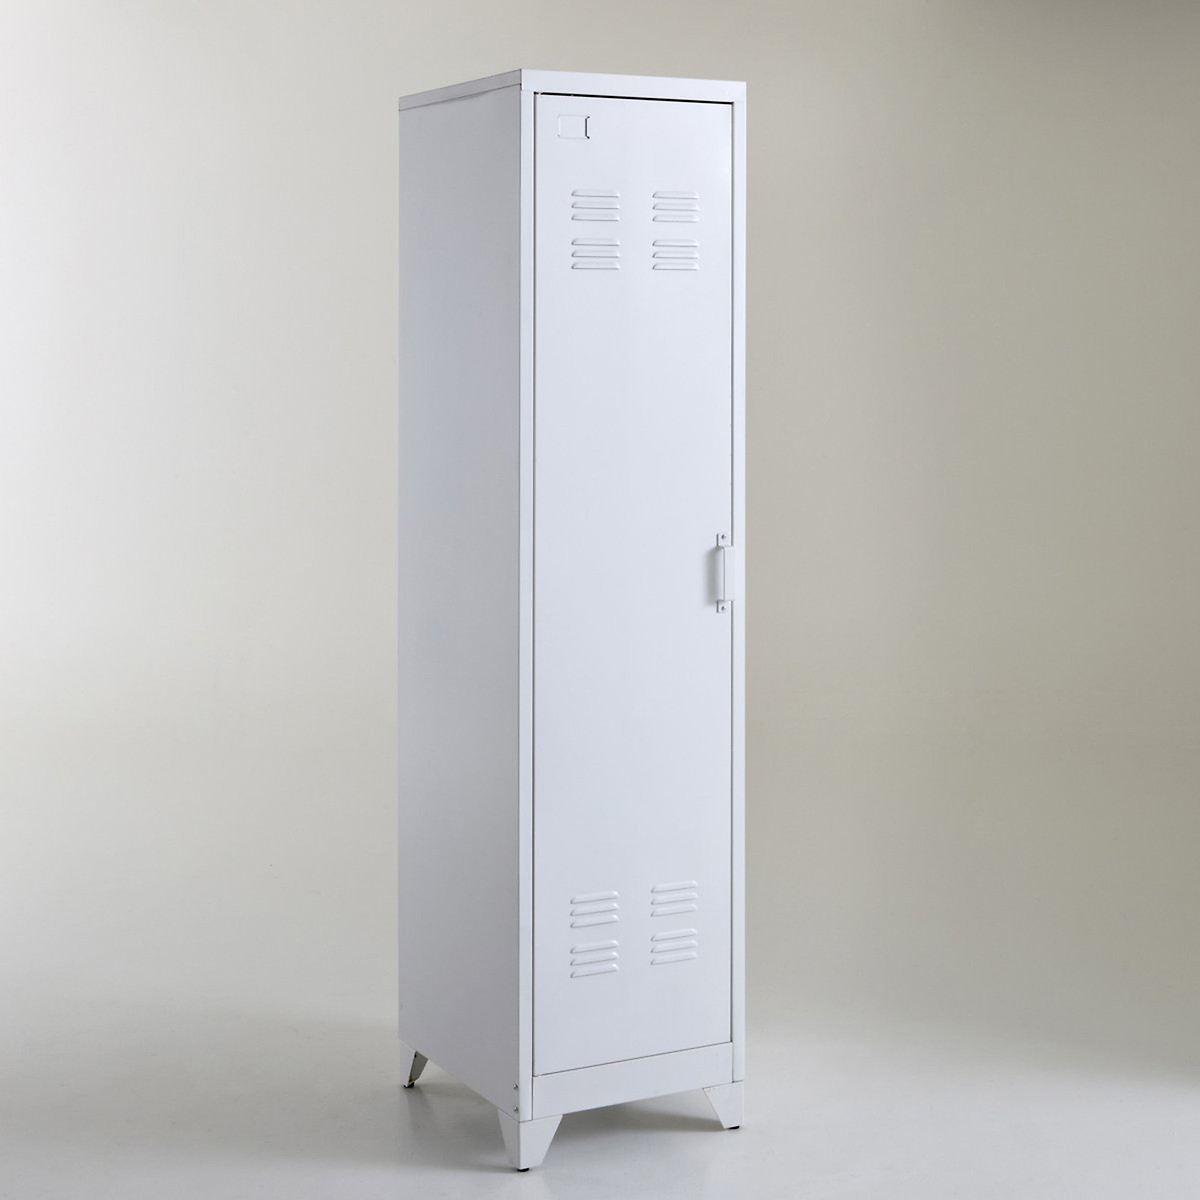 Kers brandwonden Voorspeller Hiba american-style metal locker storage unit La Redoute Interieurs | La  Redoute